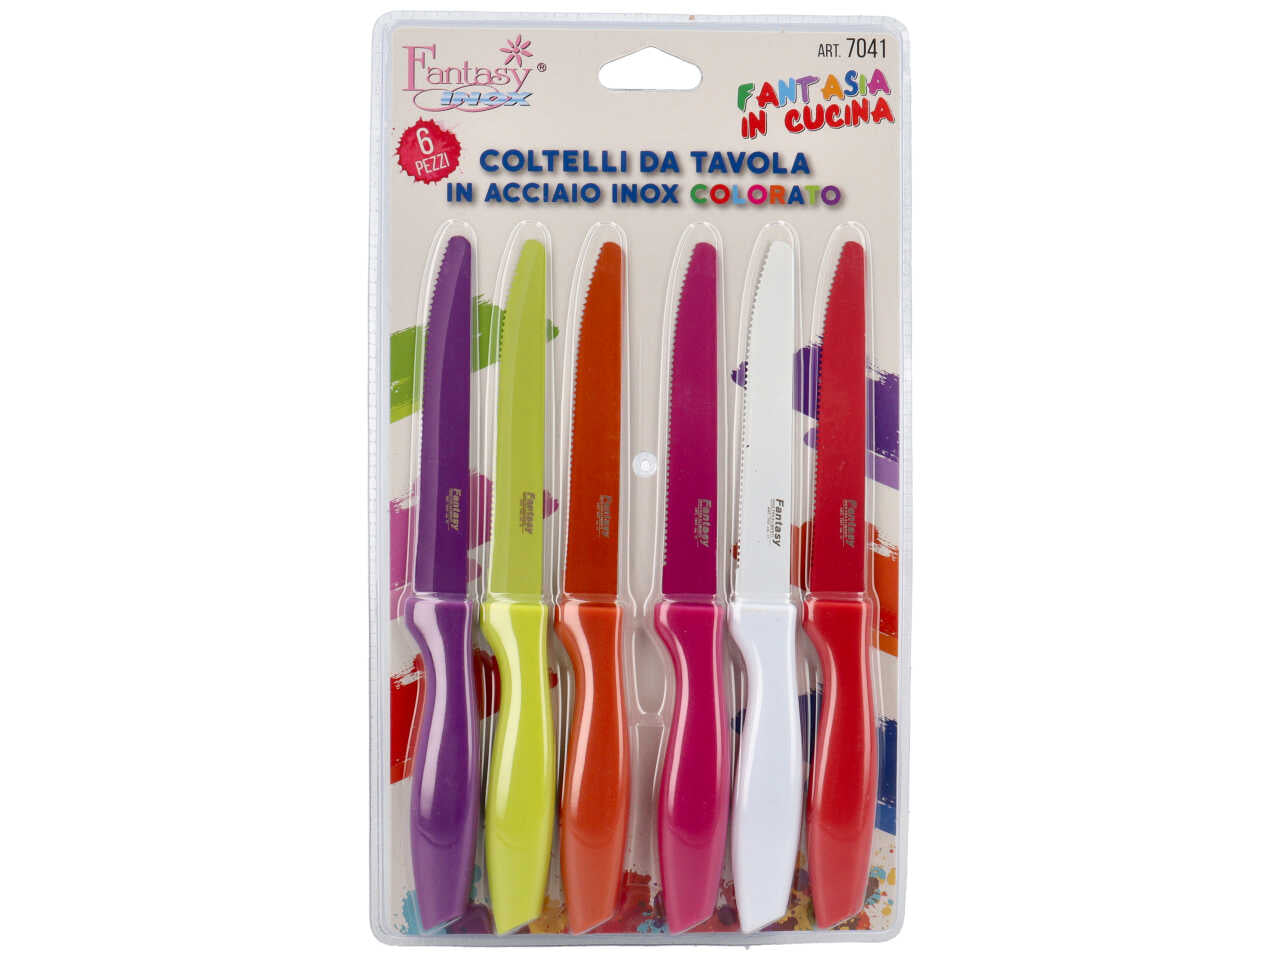 Coltelli da tavola in acciaio inox colorato - confezione da 6 coltelli in colori assortiti